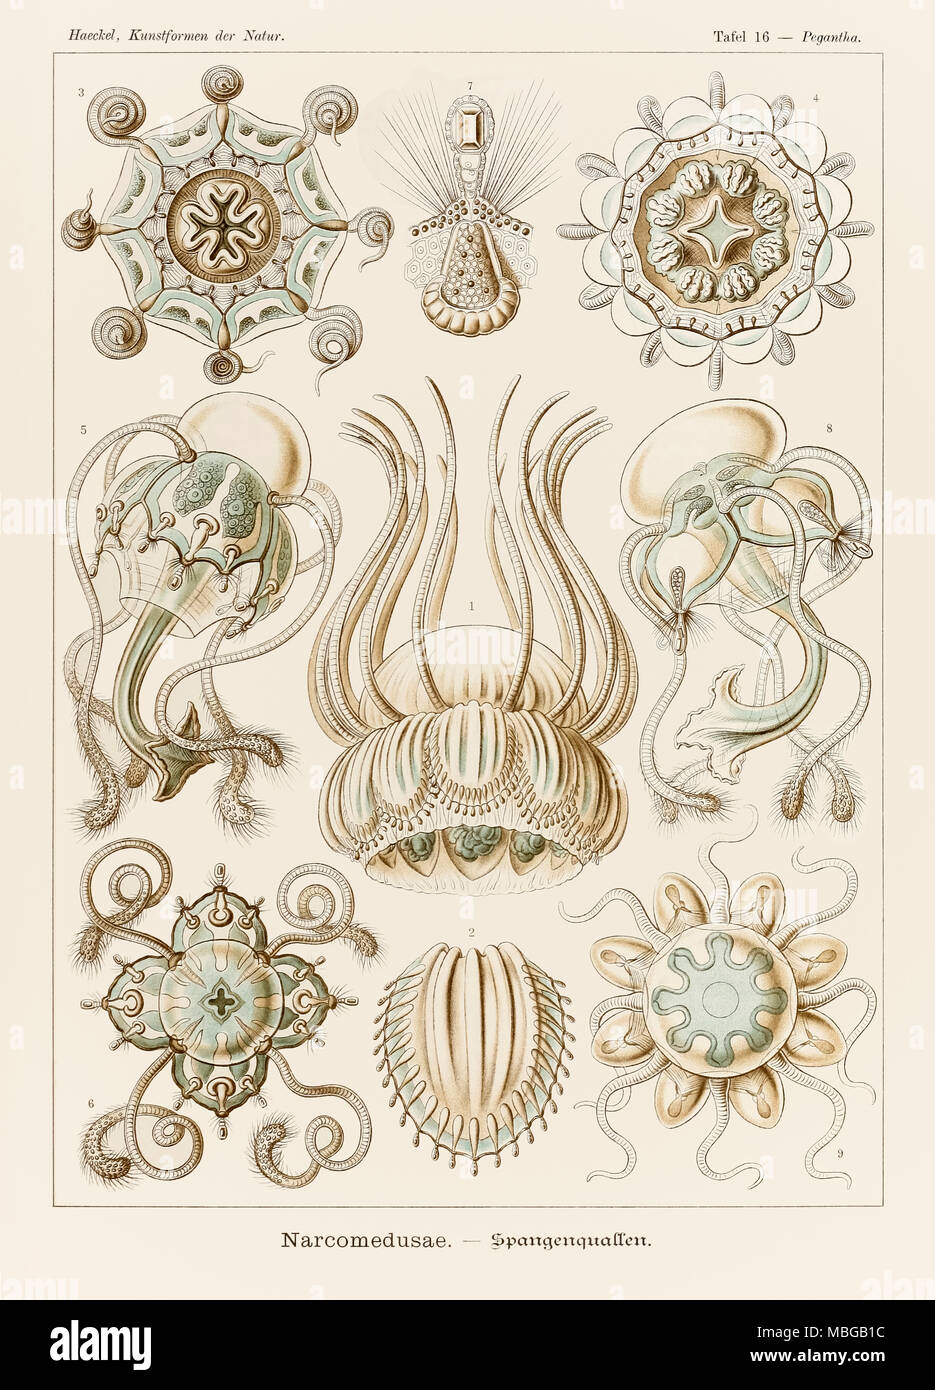 La piastra 16 Pegantha Narcomedusae da 'Kunstformen der Natur" (forme d'Arte nella Natura) illustrato da Ernst Haeckel (1834-1919). Vedere ulteriori informazioni qui di seguito. Foto Stock